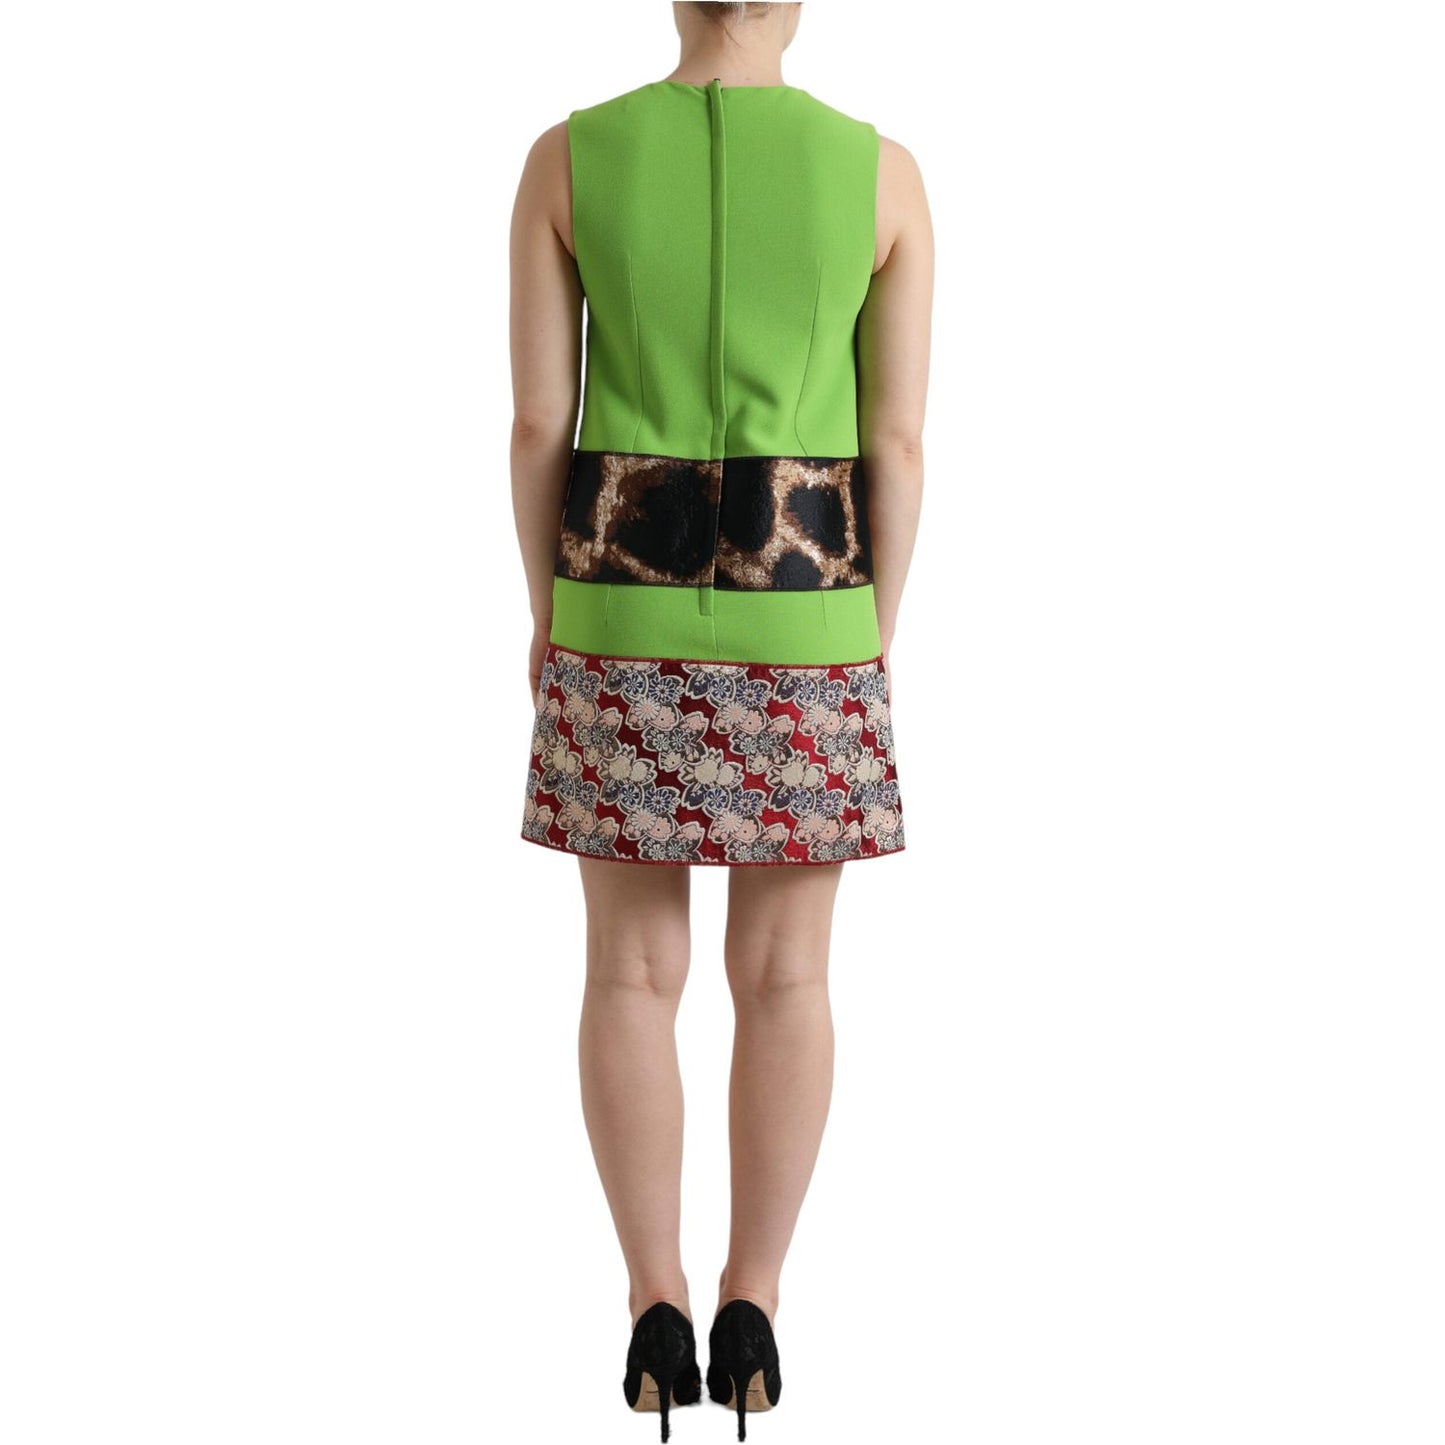 Dolce & Gabbana Chic Apple Green Shift Dress apple-green-sleeveless-panelled-shift-dress 465A1533-bg-scaled-3f70b398-196.jpg